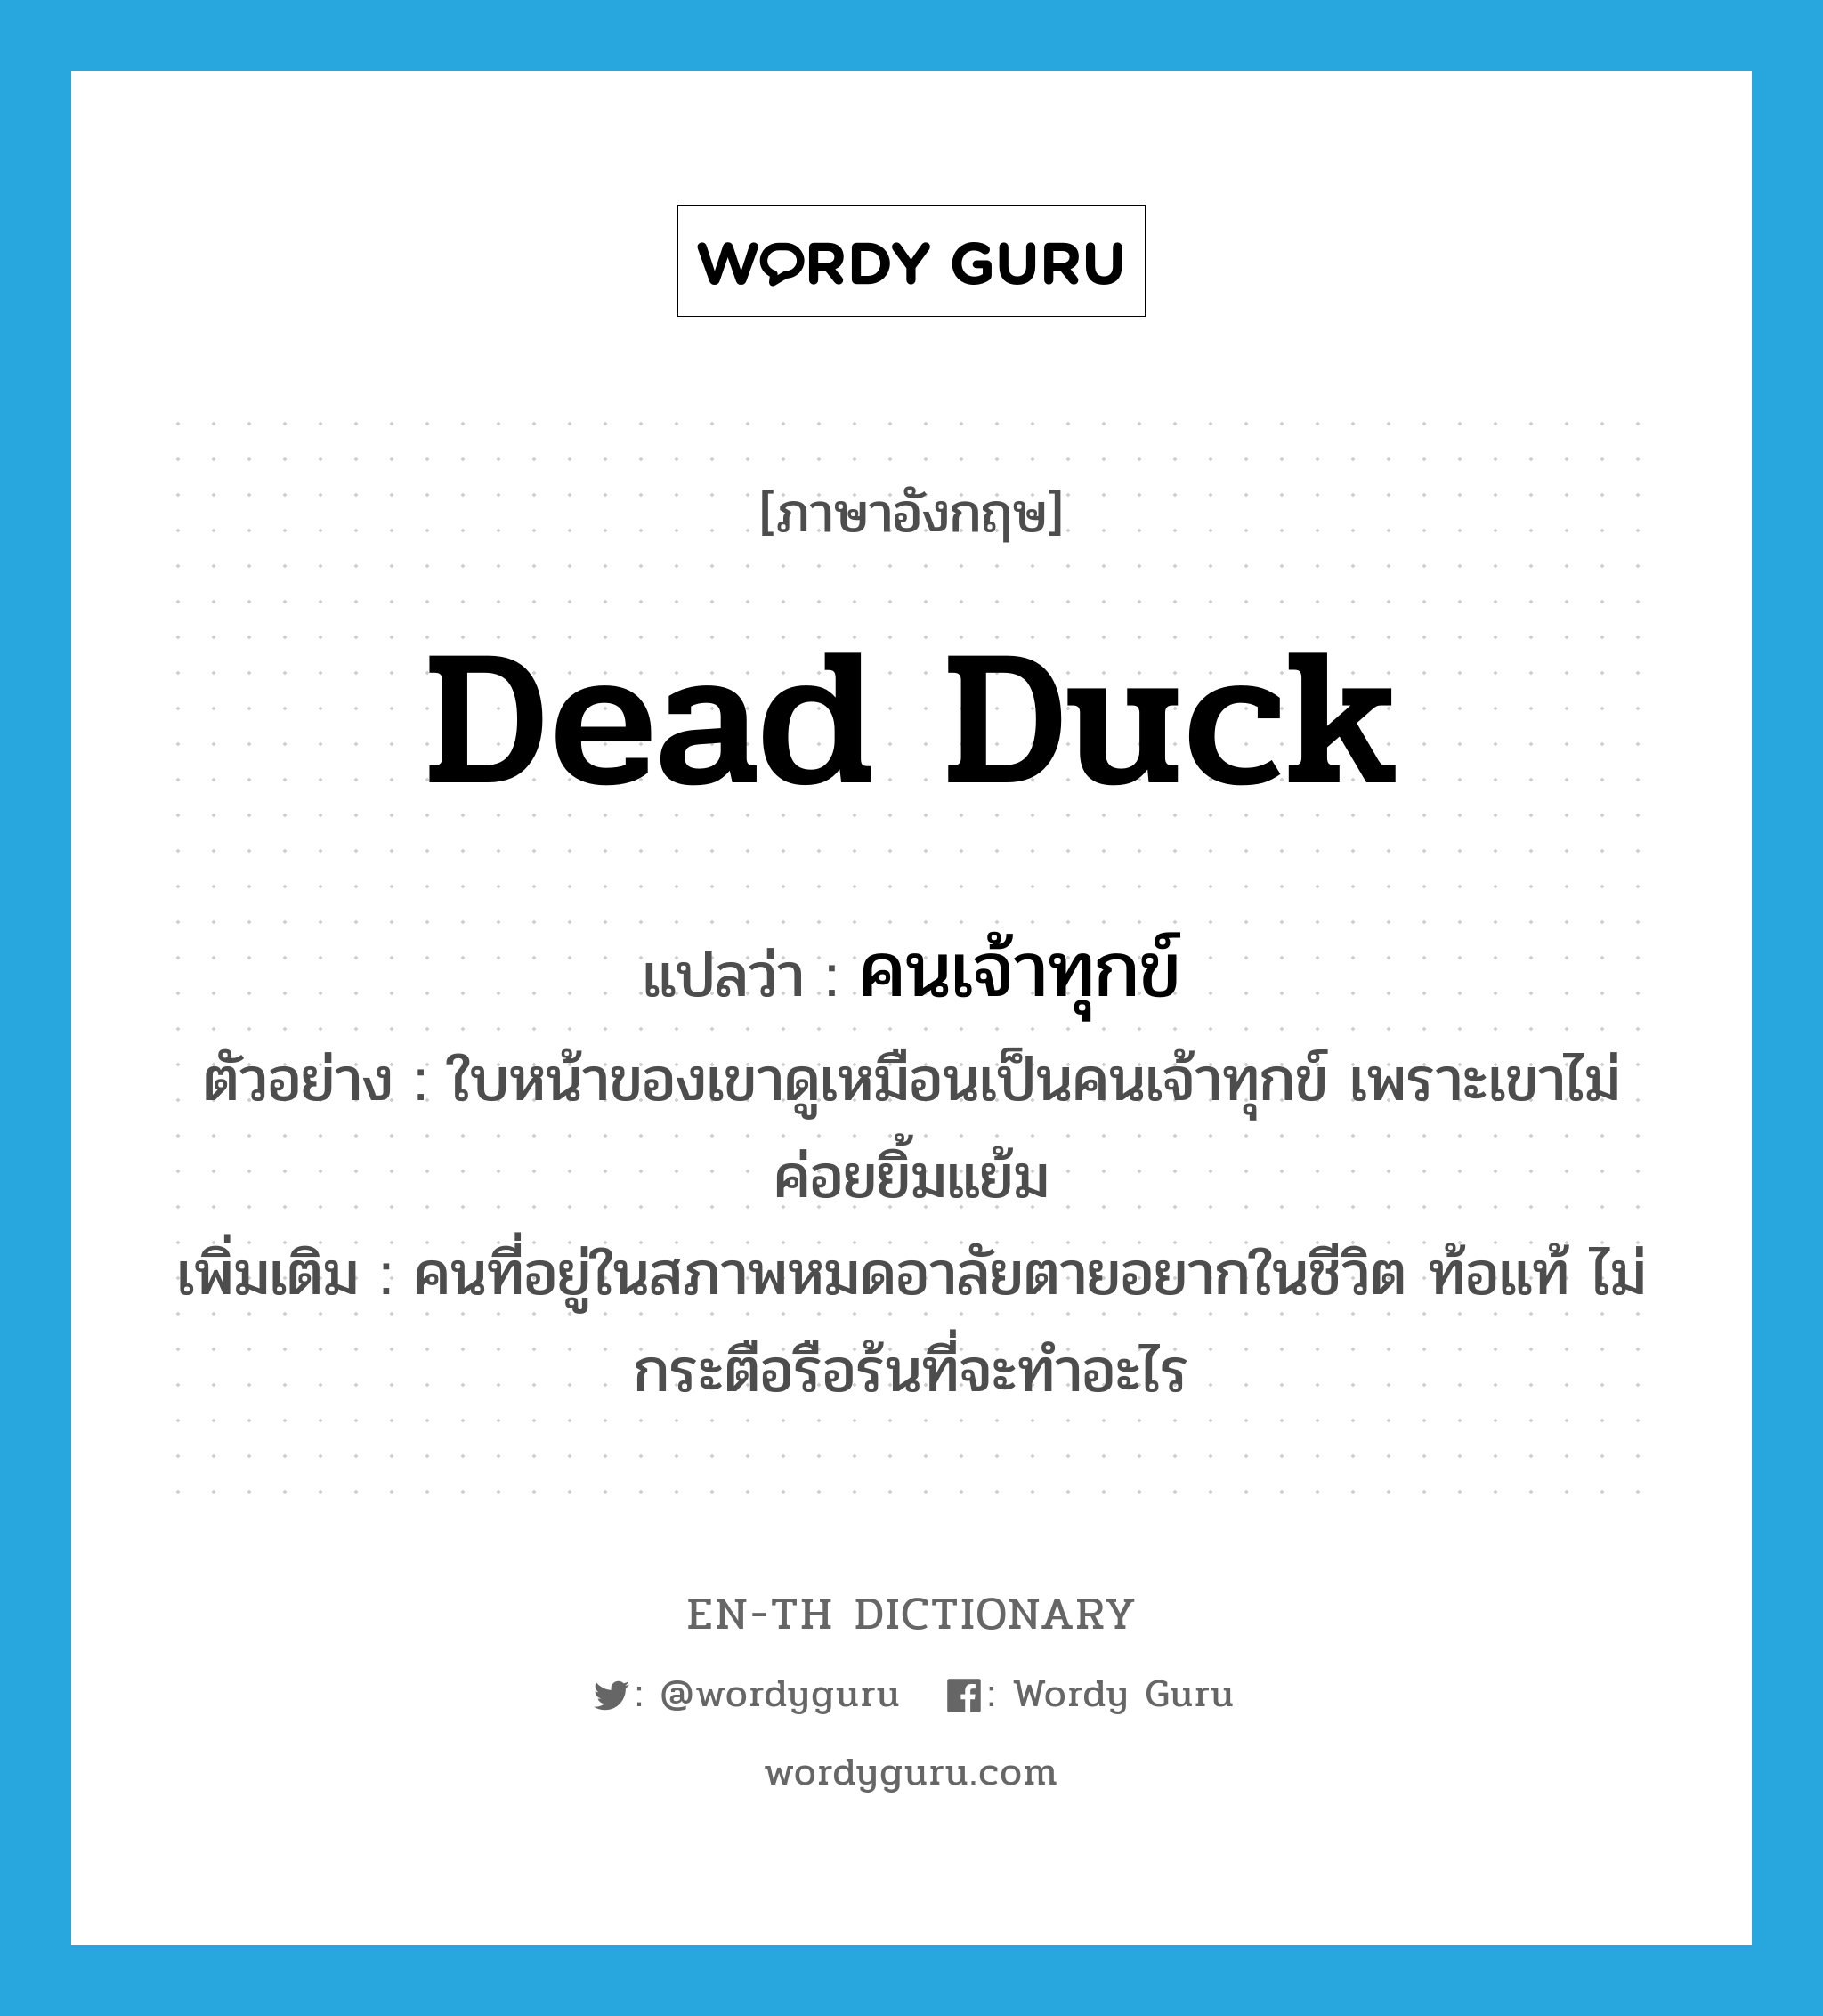 dead duck แปลว่า?, คำศัพท์ภาษาอังกฤษ dead duck แปลว่า คนเจ้าทุกข์ ประเภท N ตัวอย่าง ใบหน้าของเขาดูเหมือนเป็นคนเจ้าทุกข์ เพราะเขาไม่ค่อยยิ้มแย้ม เพิ่มเติม คนที่อยู่ในสภาพหมดอาลัยตายอยากในชีวิต ท้อแท้ ไม่กระตือรือร้นที่จะทำอะไร หมวด N